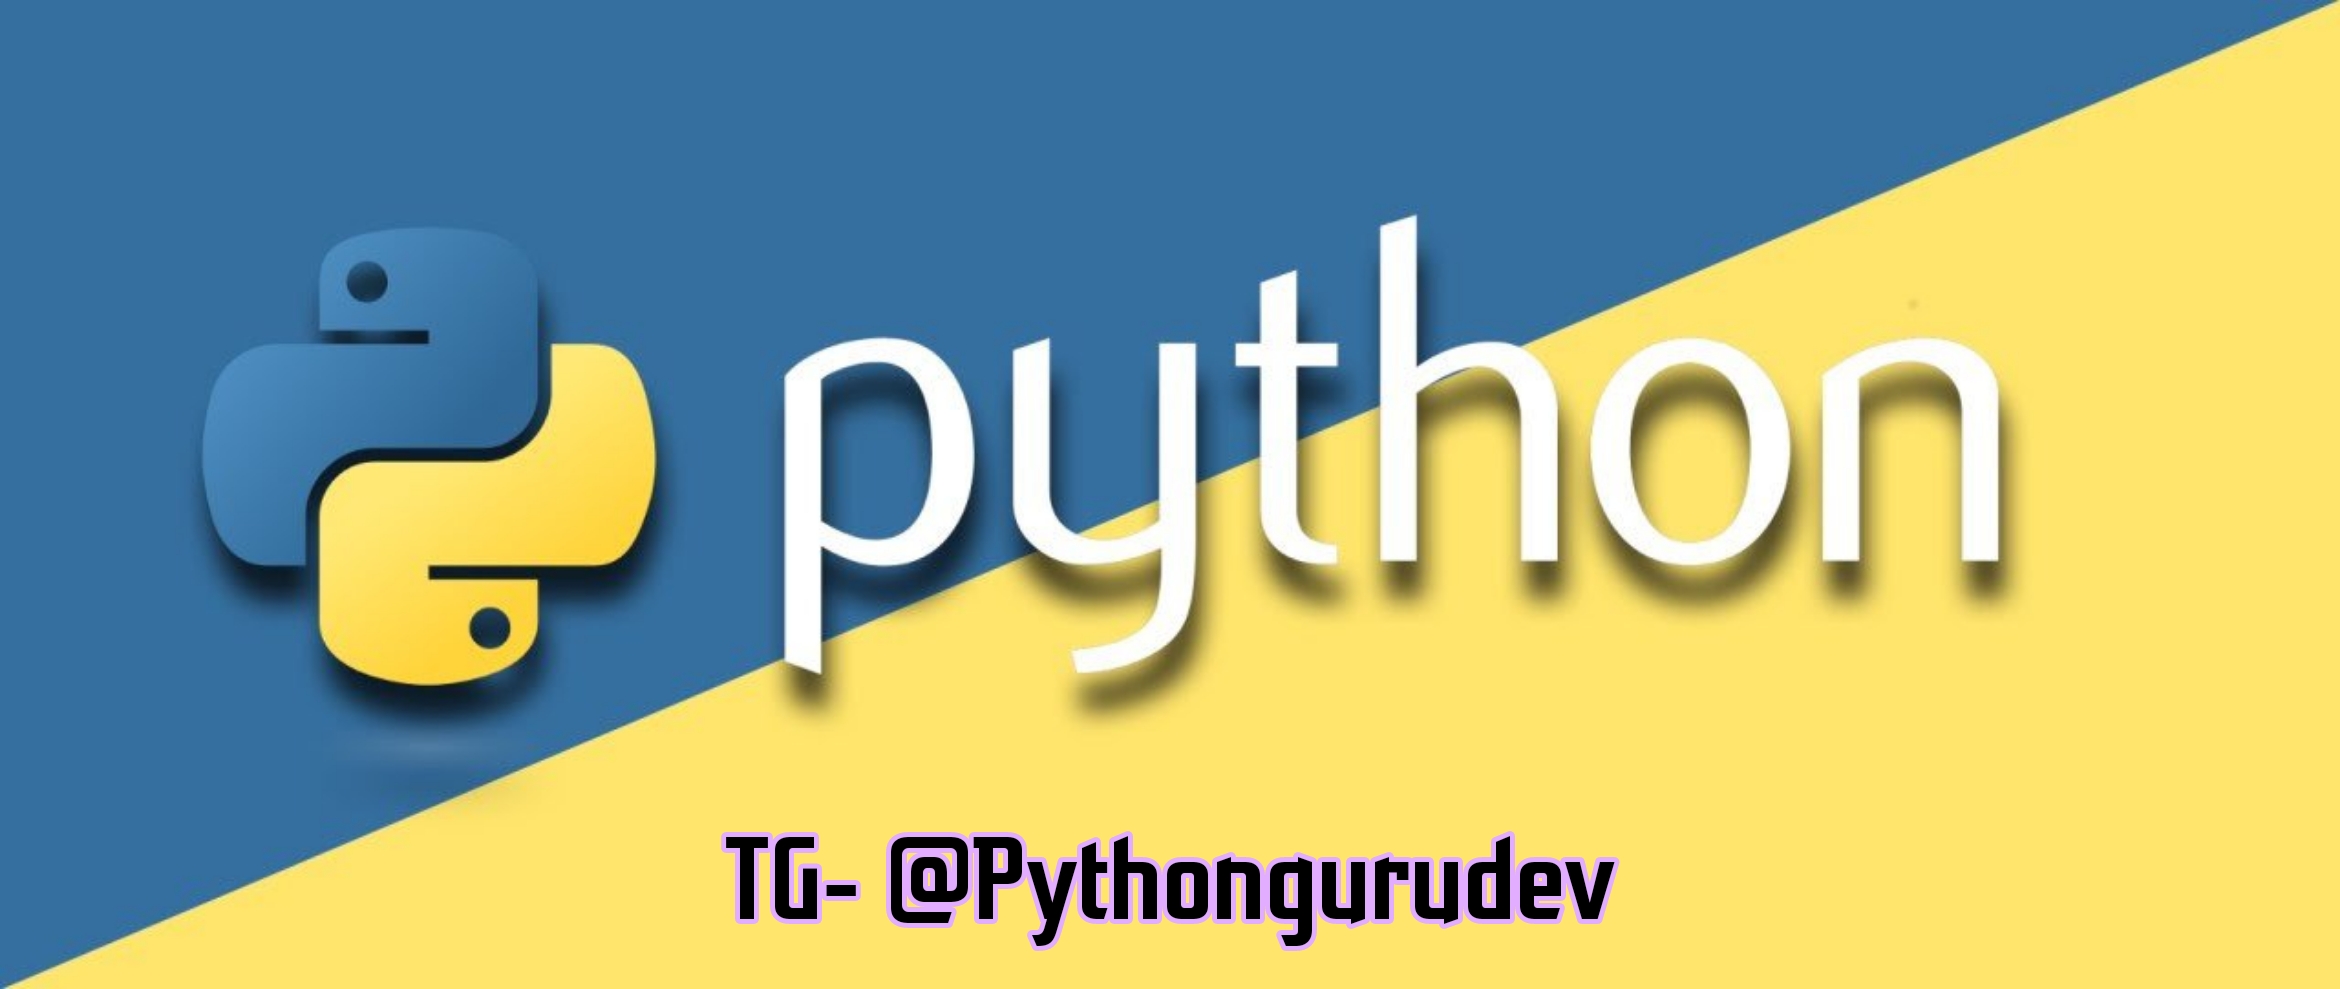 Логотип языка python. Python язык программирования логотип. Питон язык программирования лого. Язык программирования phuton логотип. Python картинки.